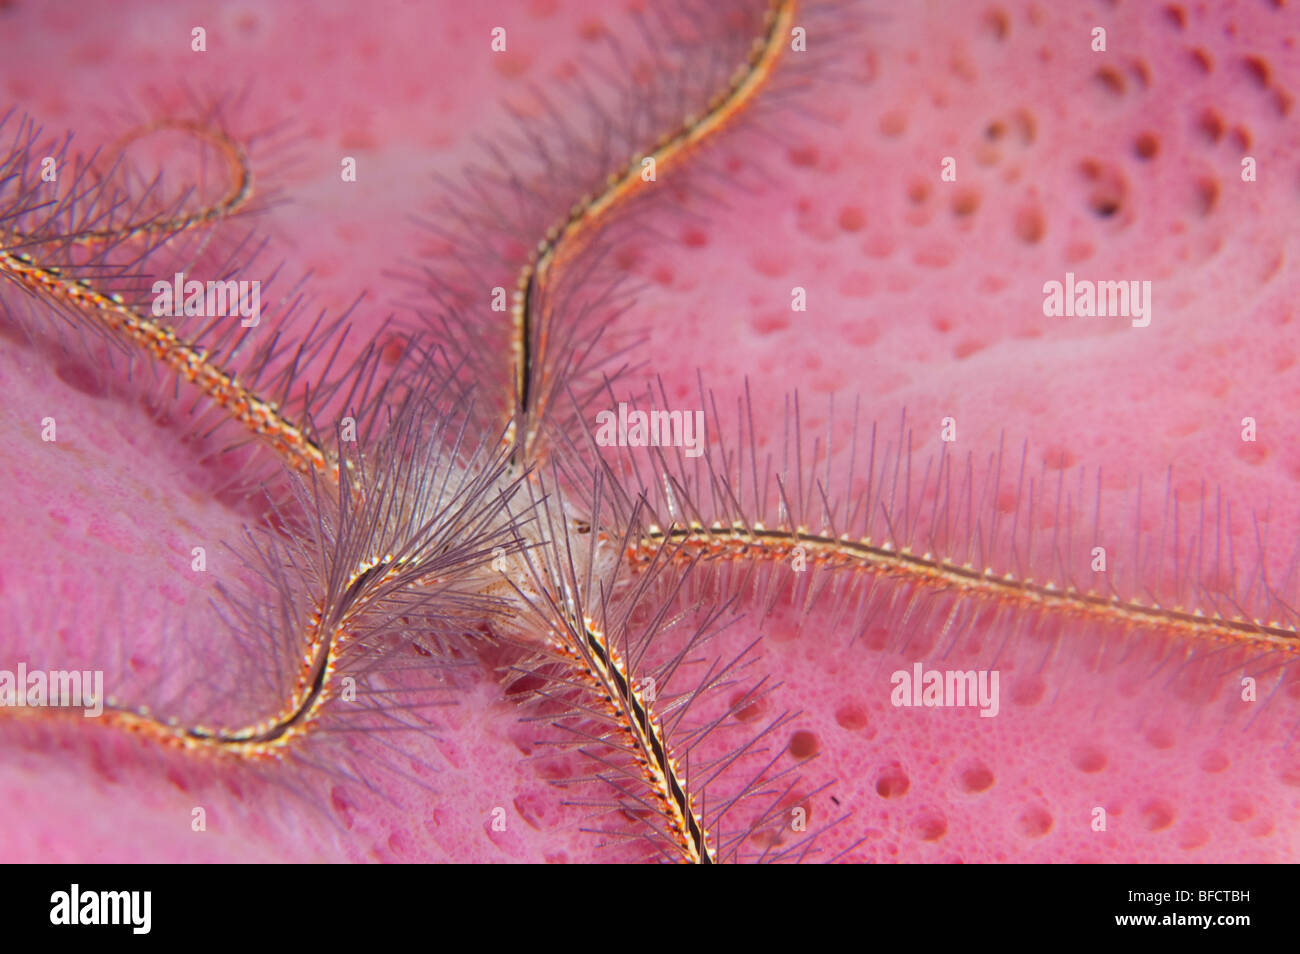 A Sponge Brittle Star inside a Pink Vase Sponge in LIttle Cayman. Stock Photo